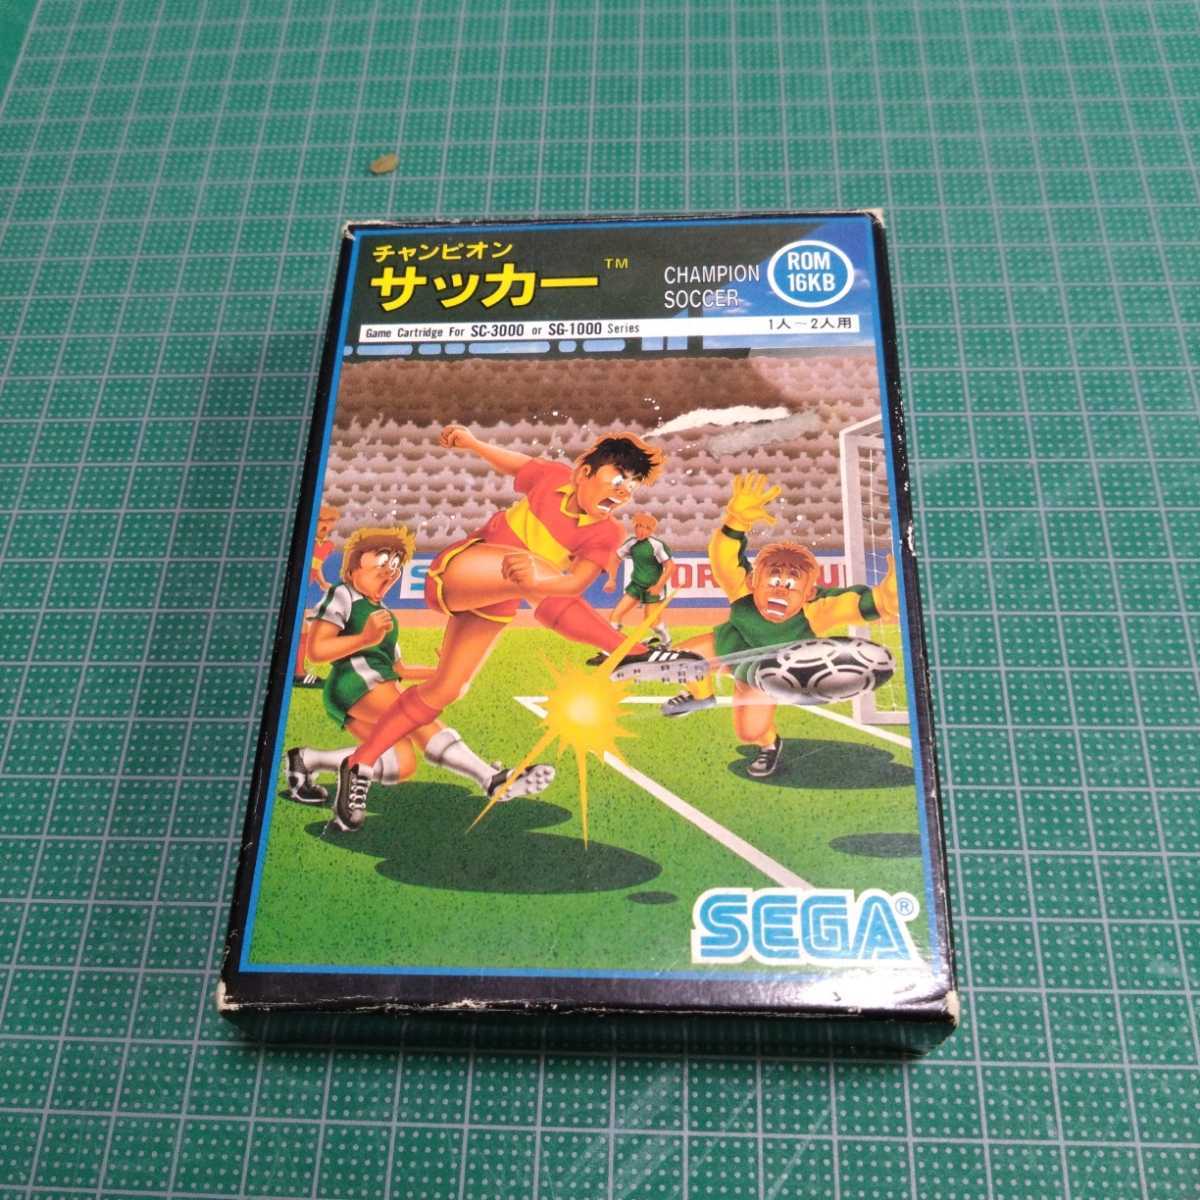  Champion soccer Sega SEGA SC-3000 SG-1000